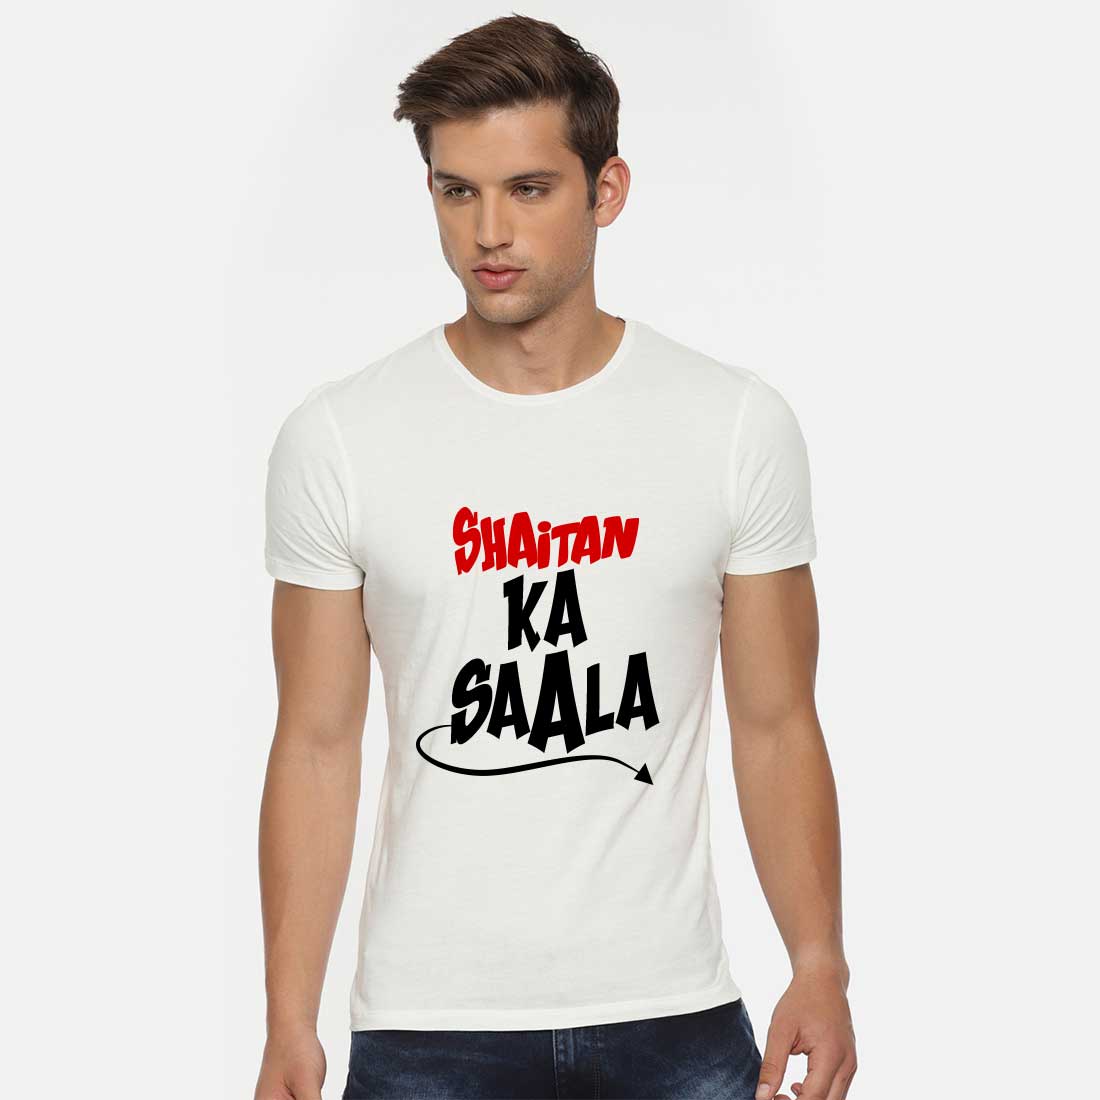 Shaitan Ka Saala White Men T-Shirt